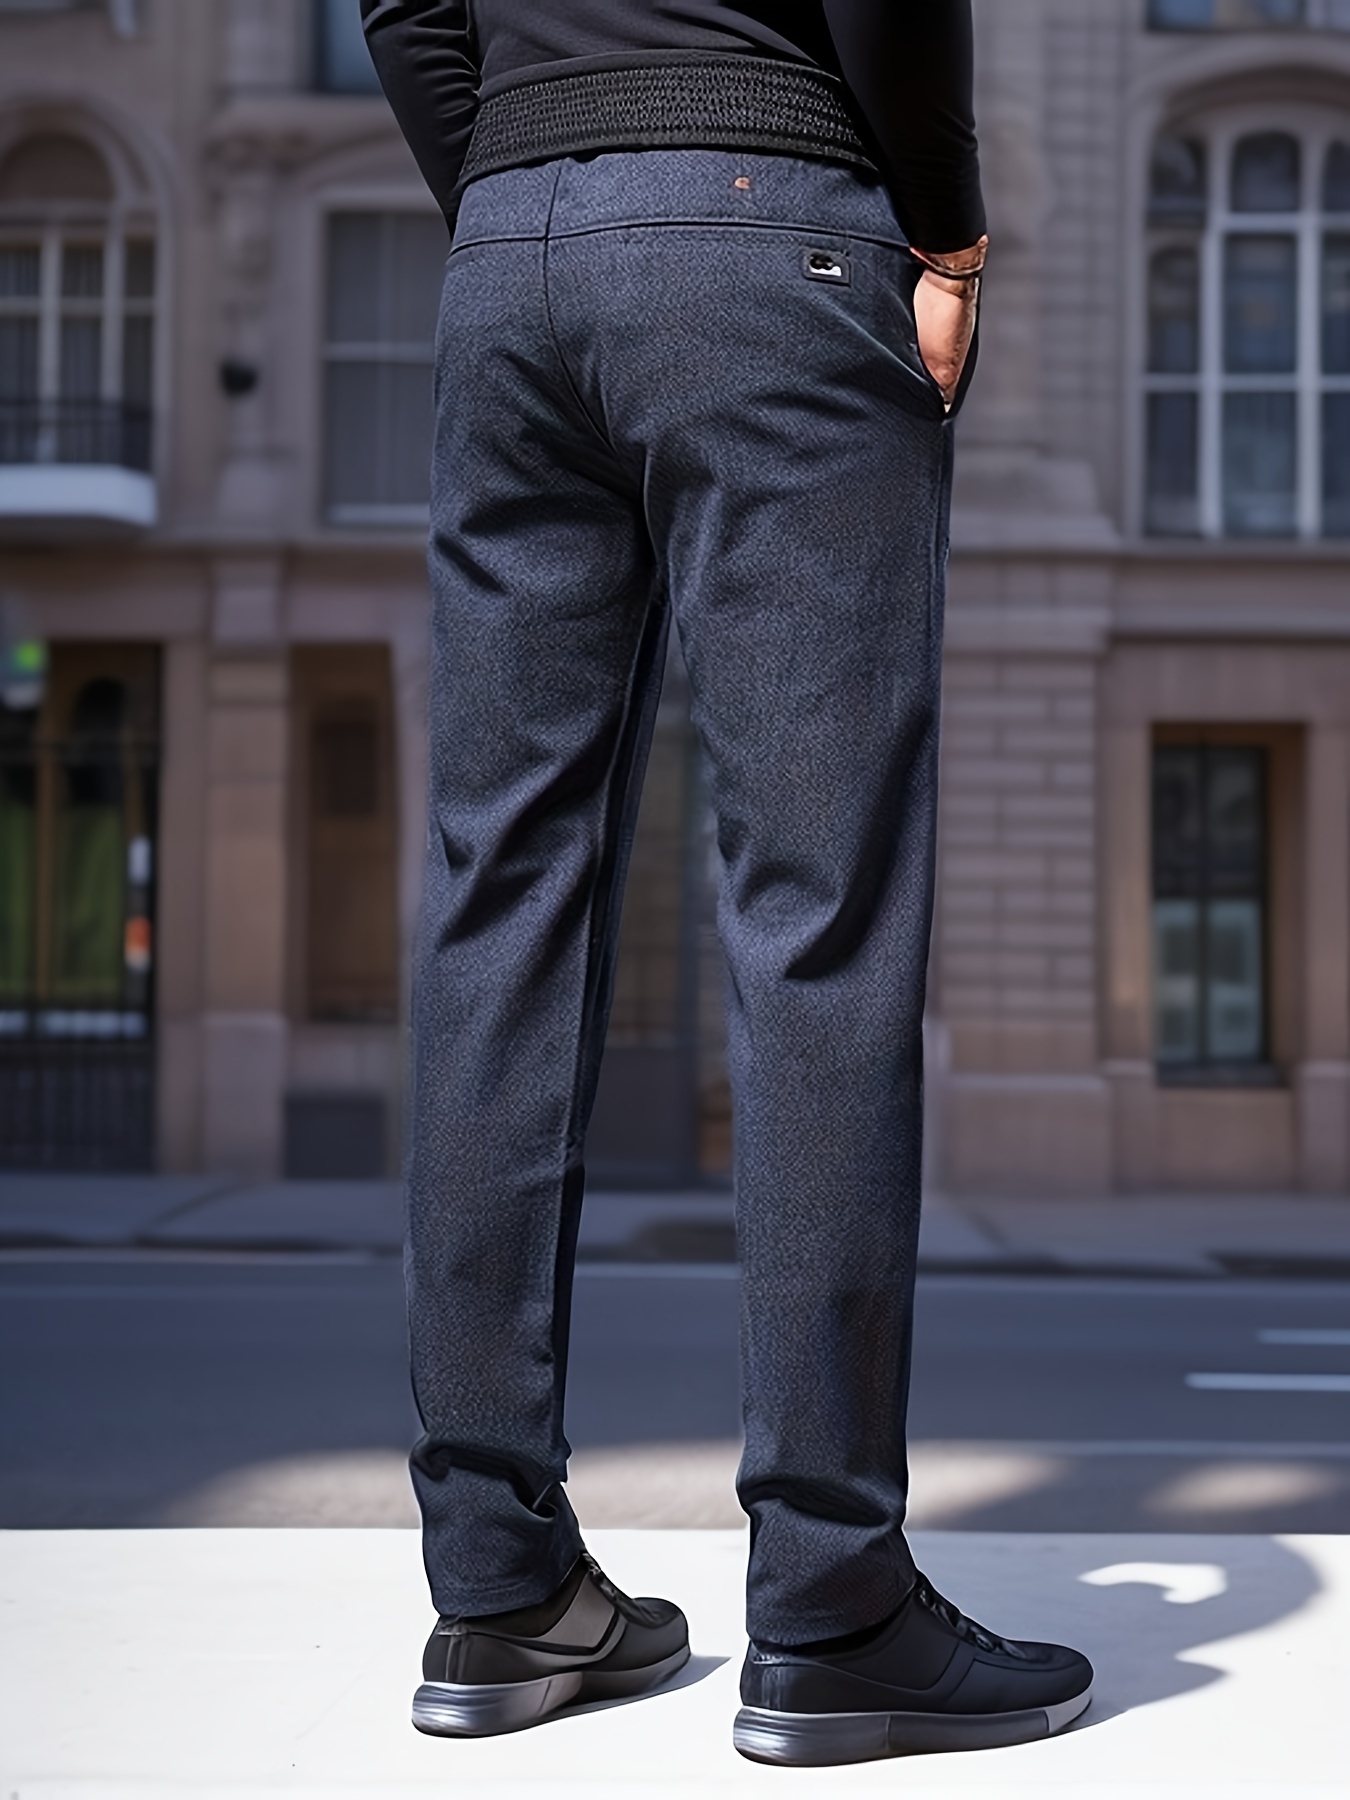 Slim Fit Business Pants Men, Men's Formal Trousers